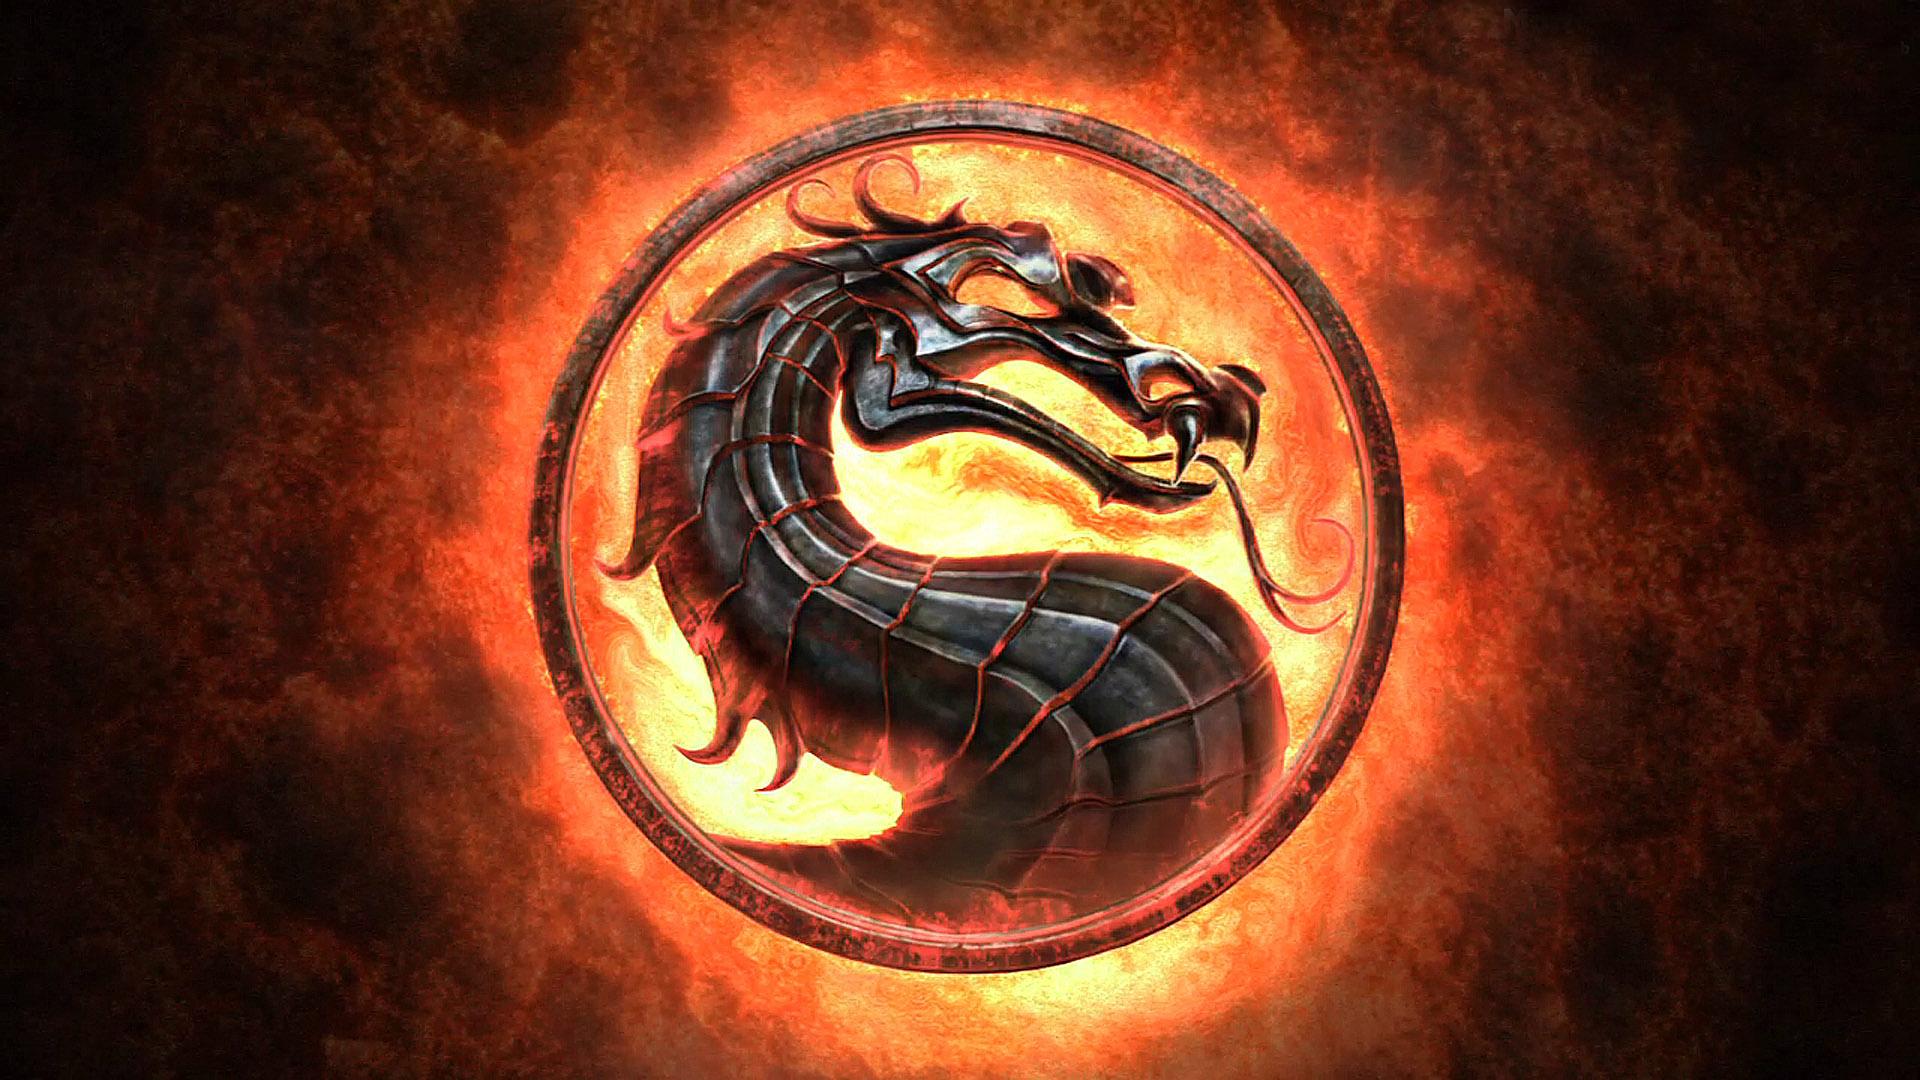 32+] Mortal Kombat Logo Wallpapers - WallpaperSafari